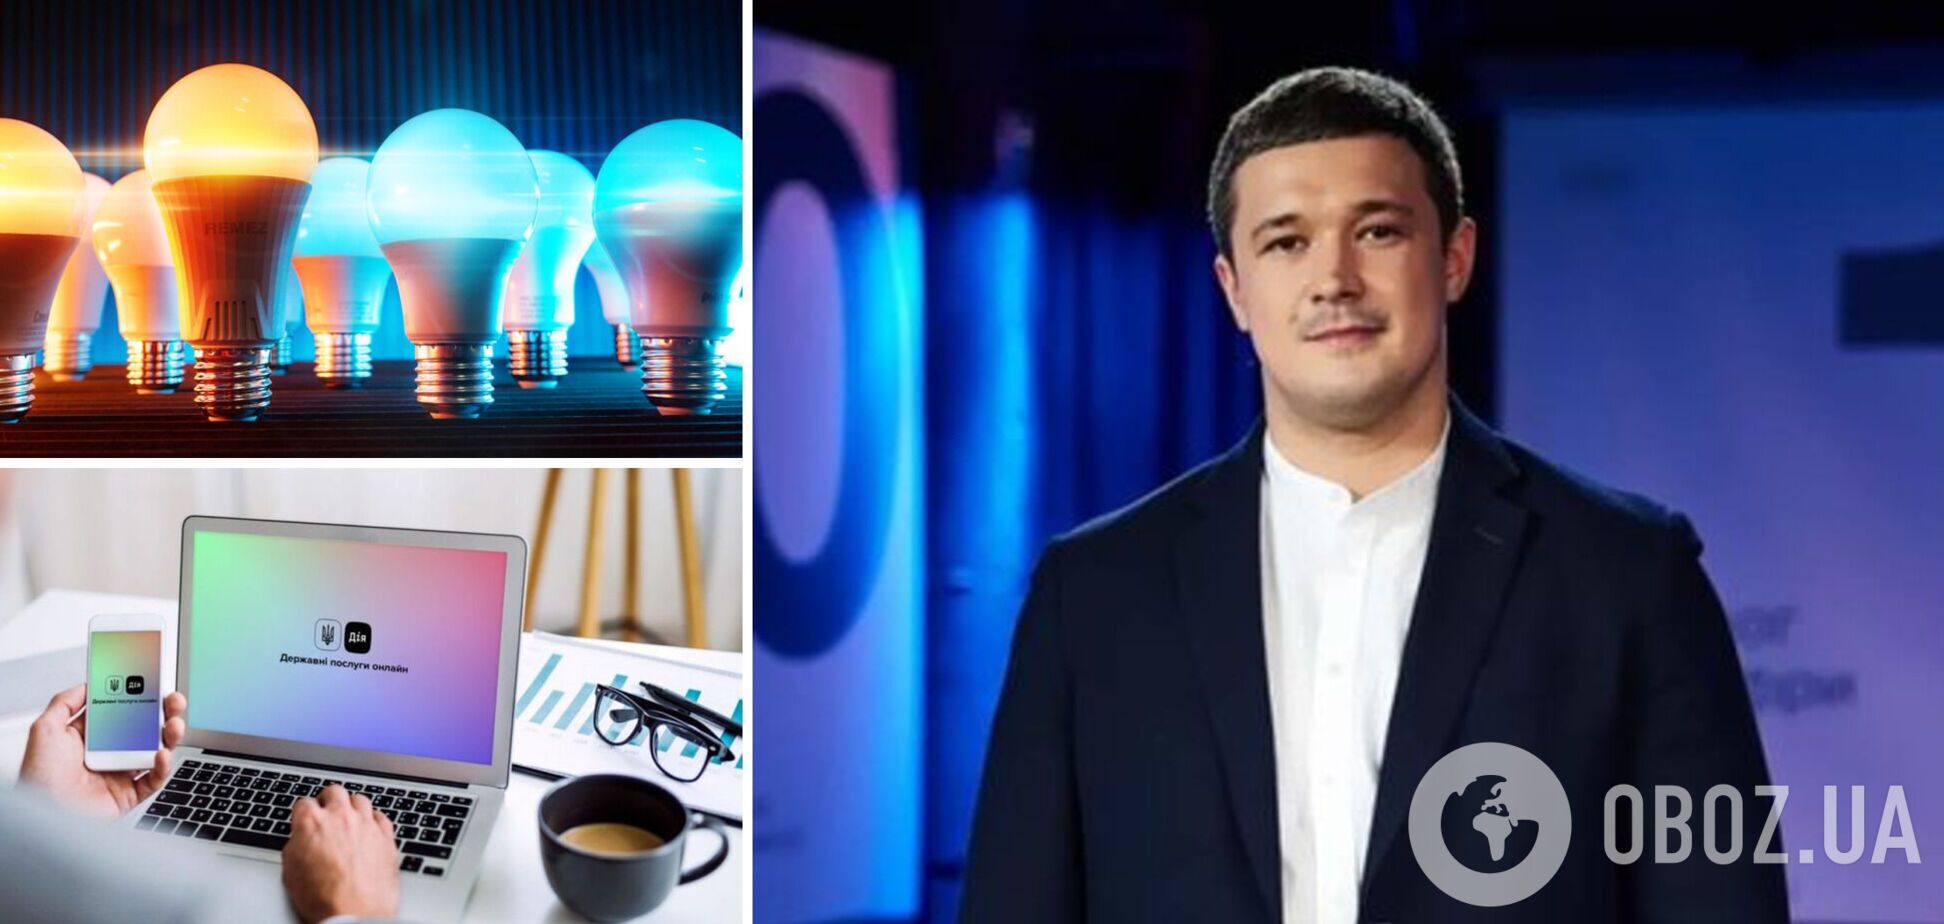 В Украине теперь можно подать заявку на получение бесплатных LED-лампочек